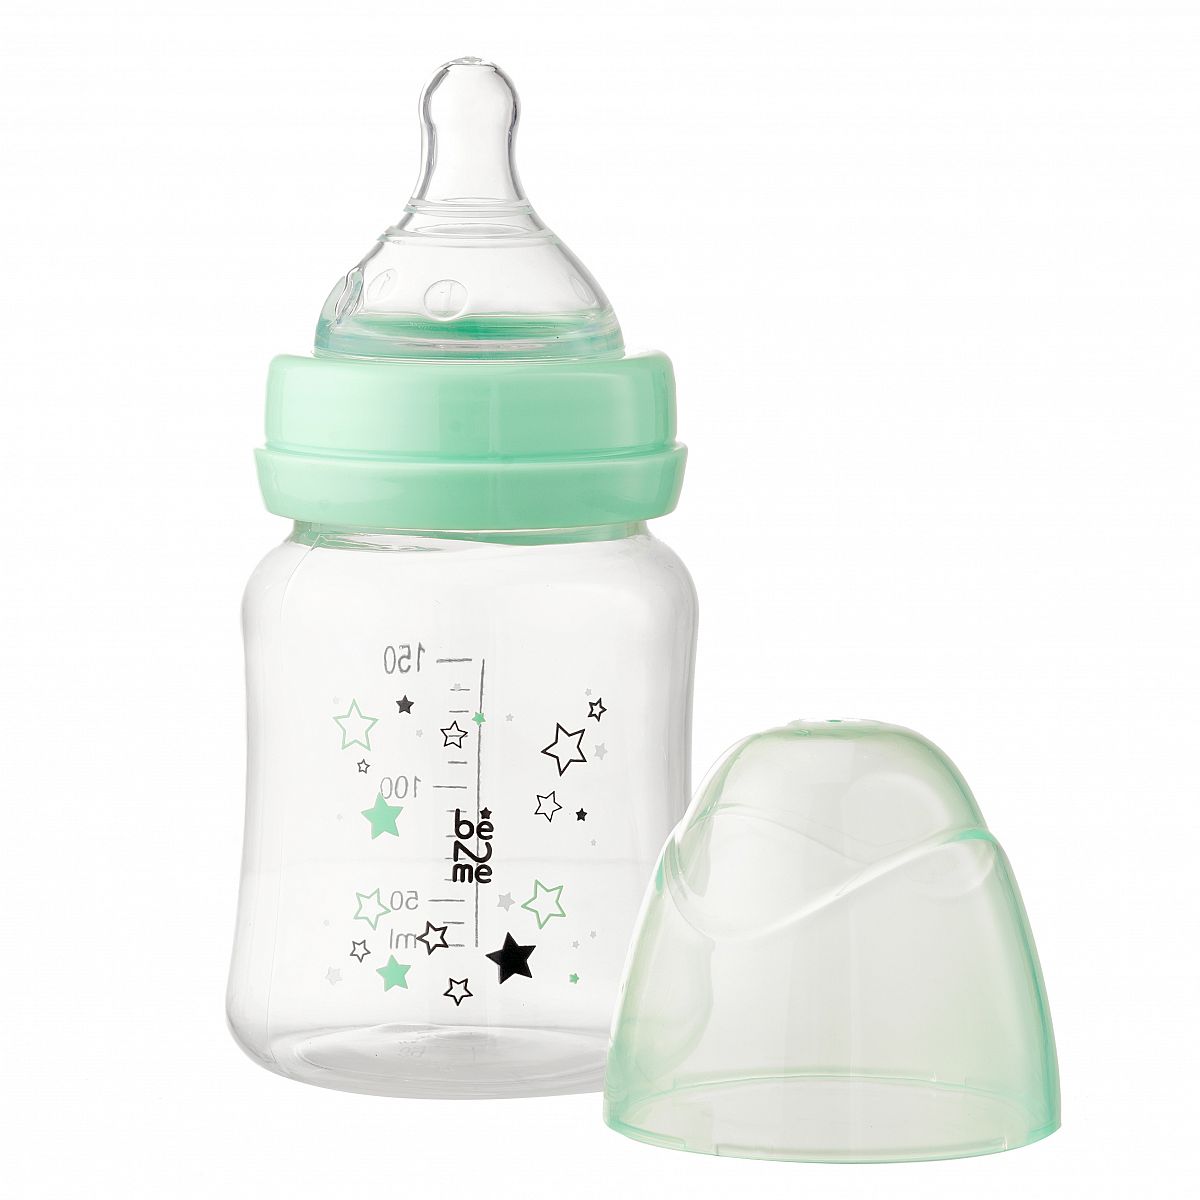 Бутылочки для кормления новорожденных: виды, обзоры лучших брендов, советы по выбору и использованию, отзывы